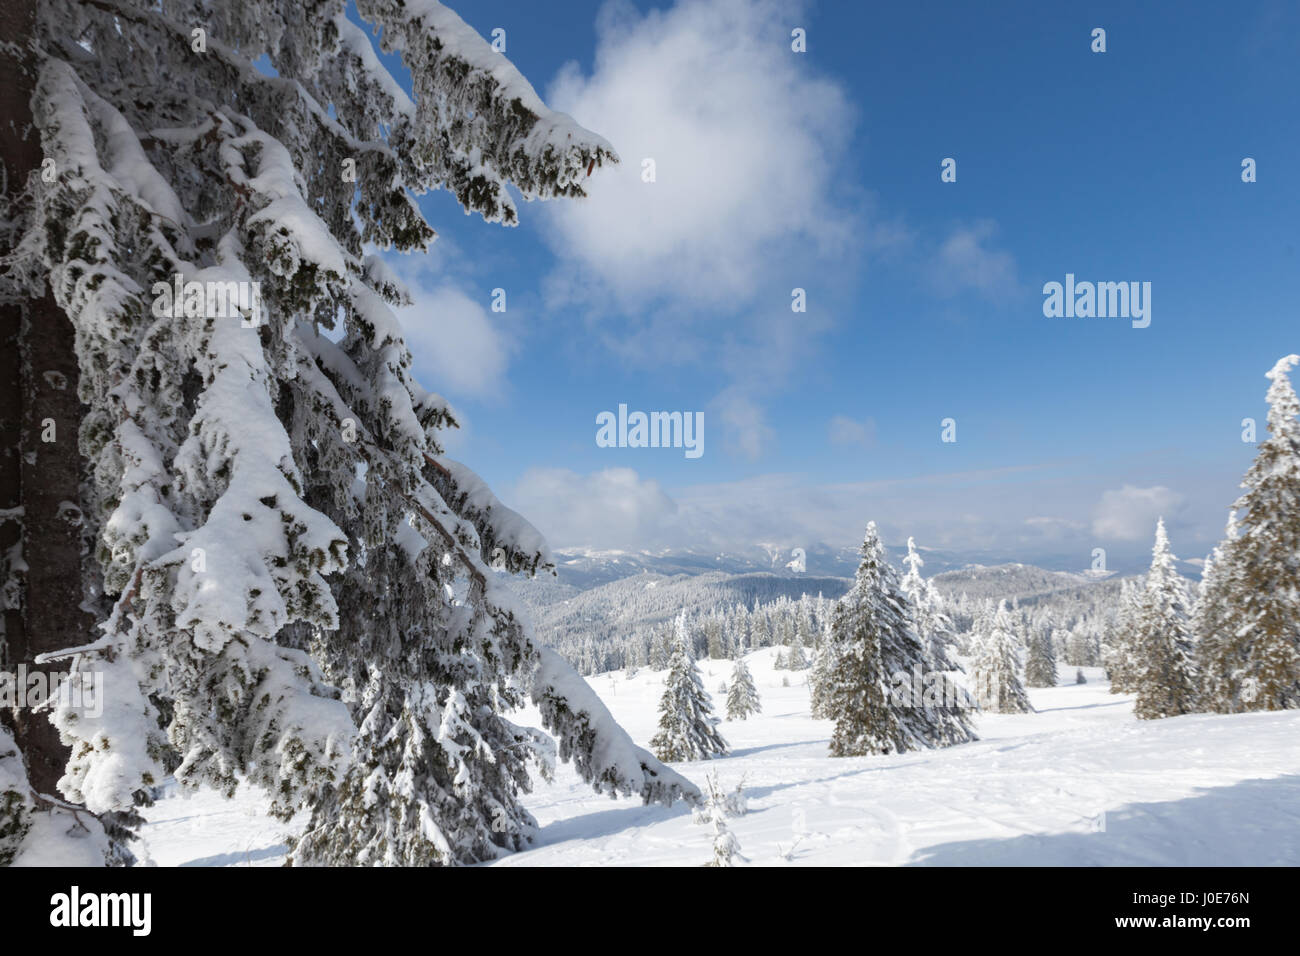 Sunny scena invernale con pini innevato Foto Stock